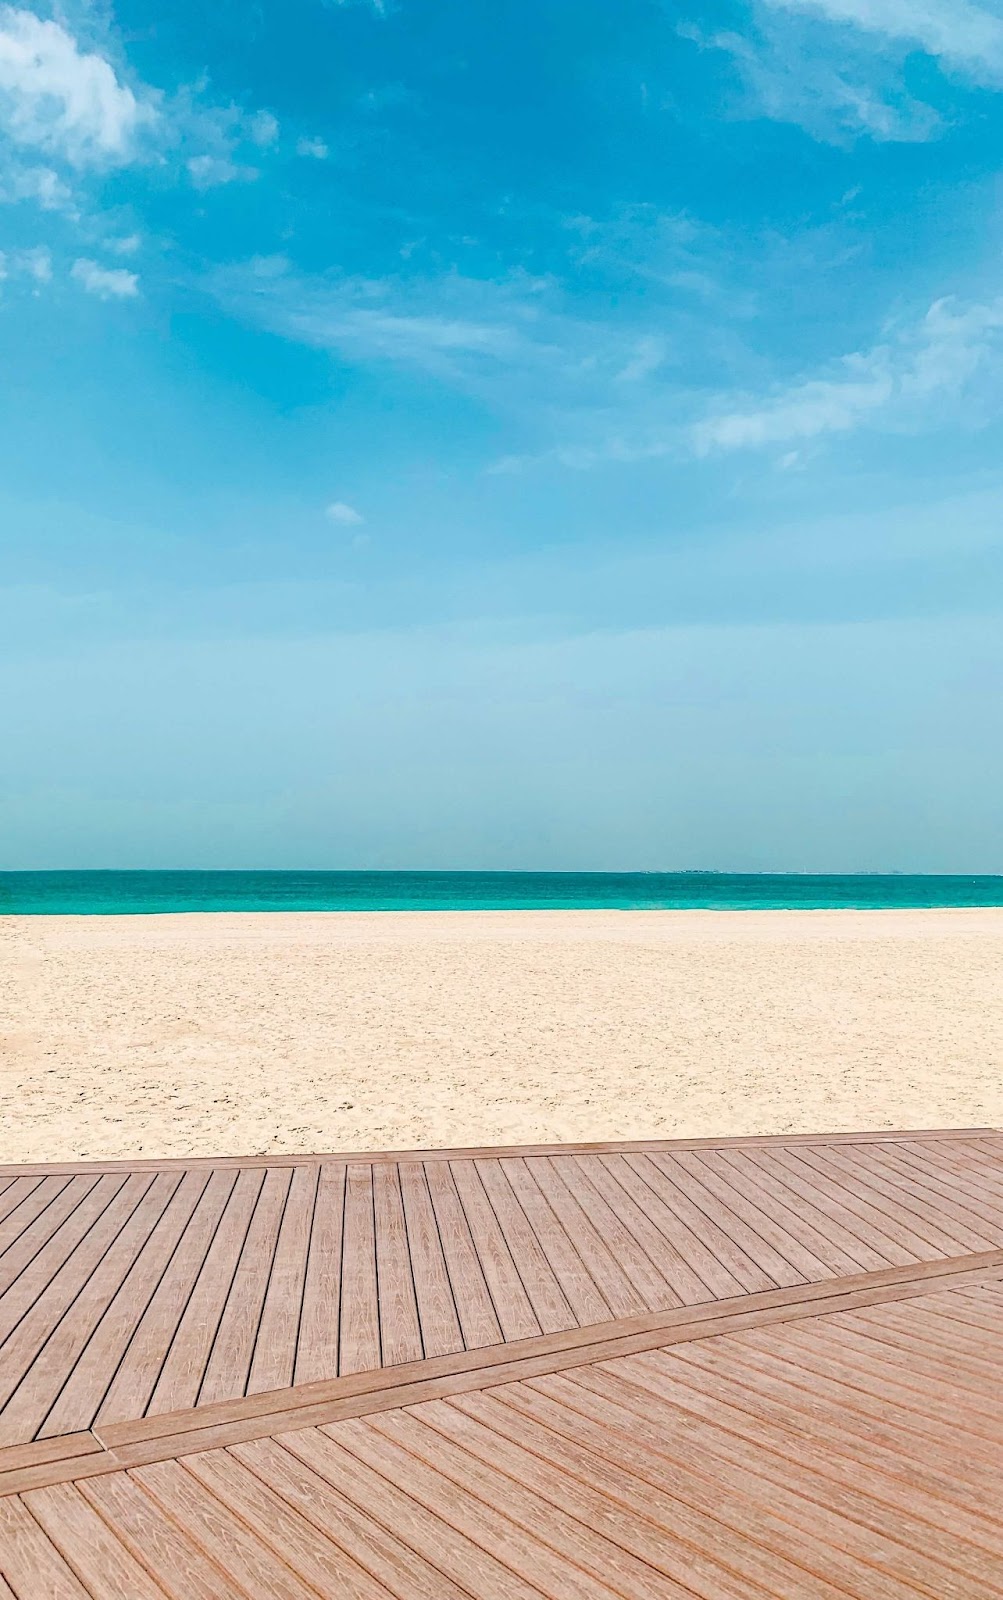 1 day in Dubai, Jumeirah Beach, Dubai, United Arab Emirates